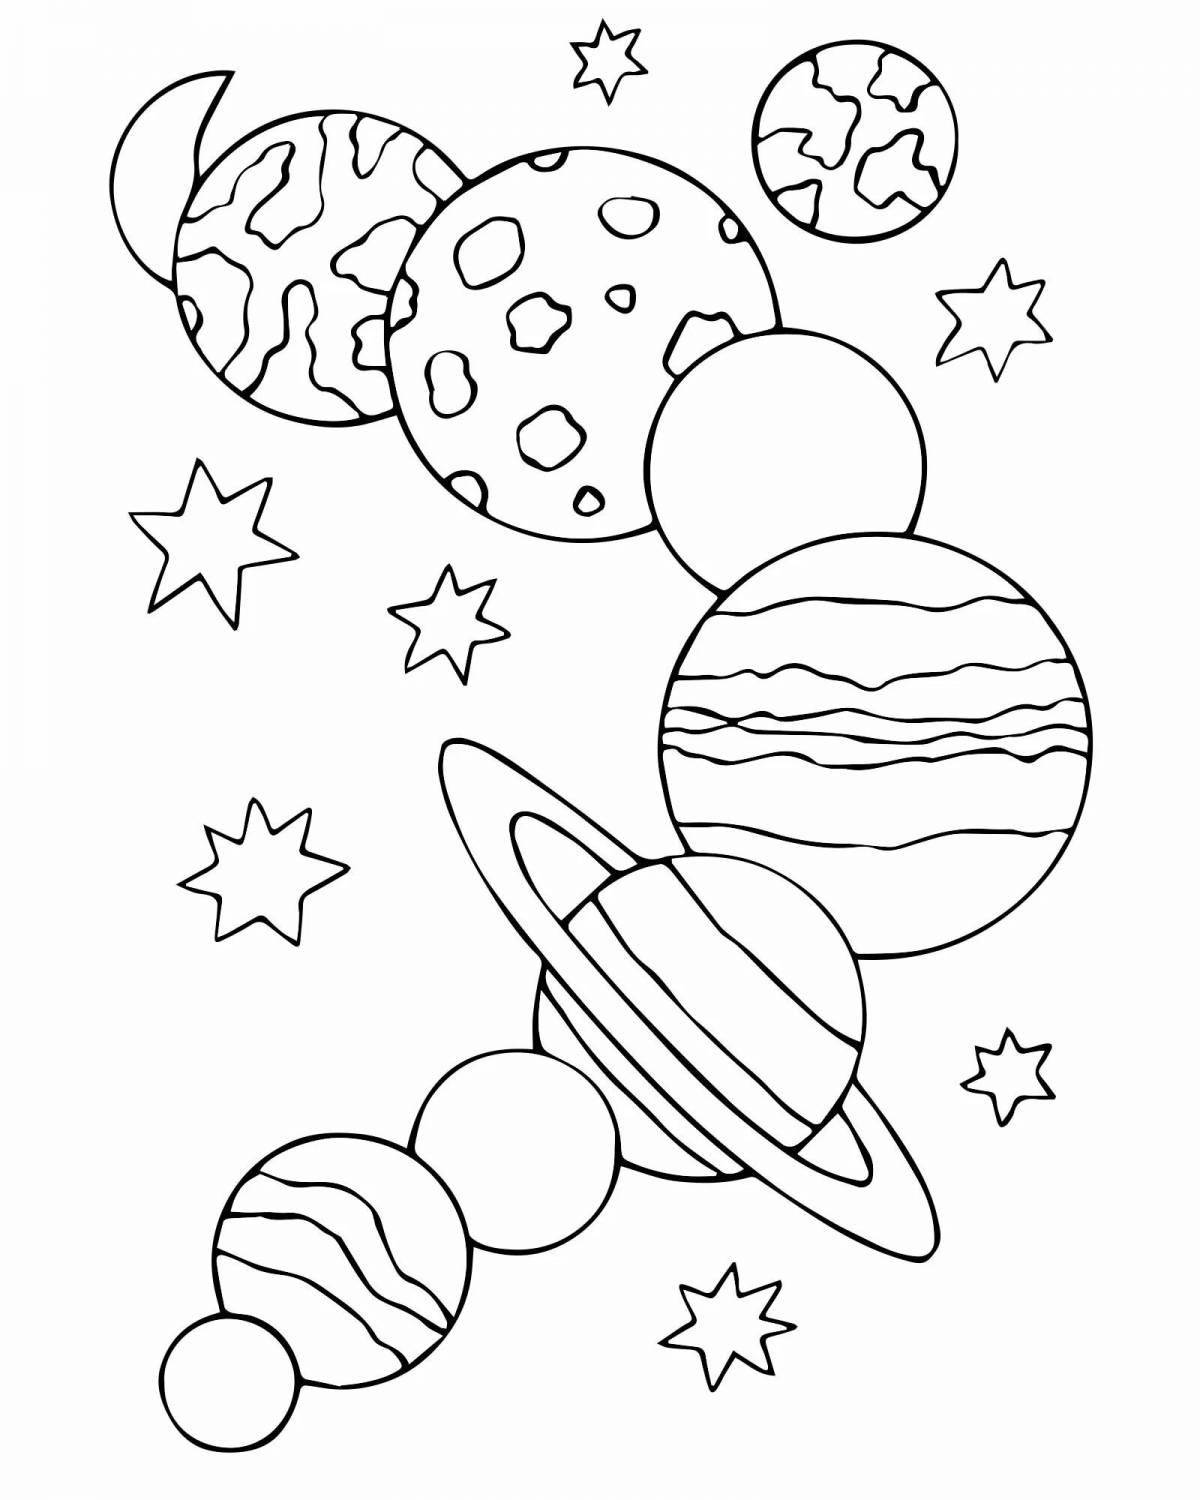 Захватывающая космическая раскраска для детей 4-5 лет